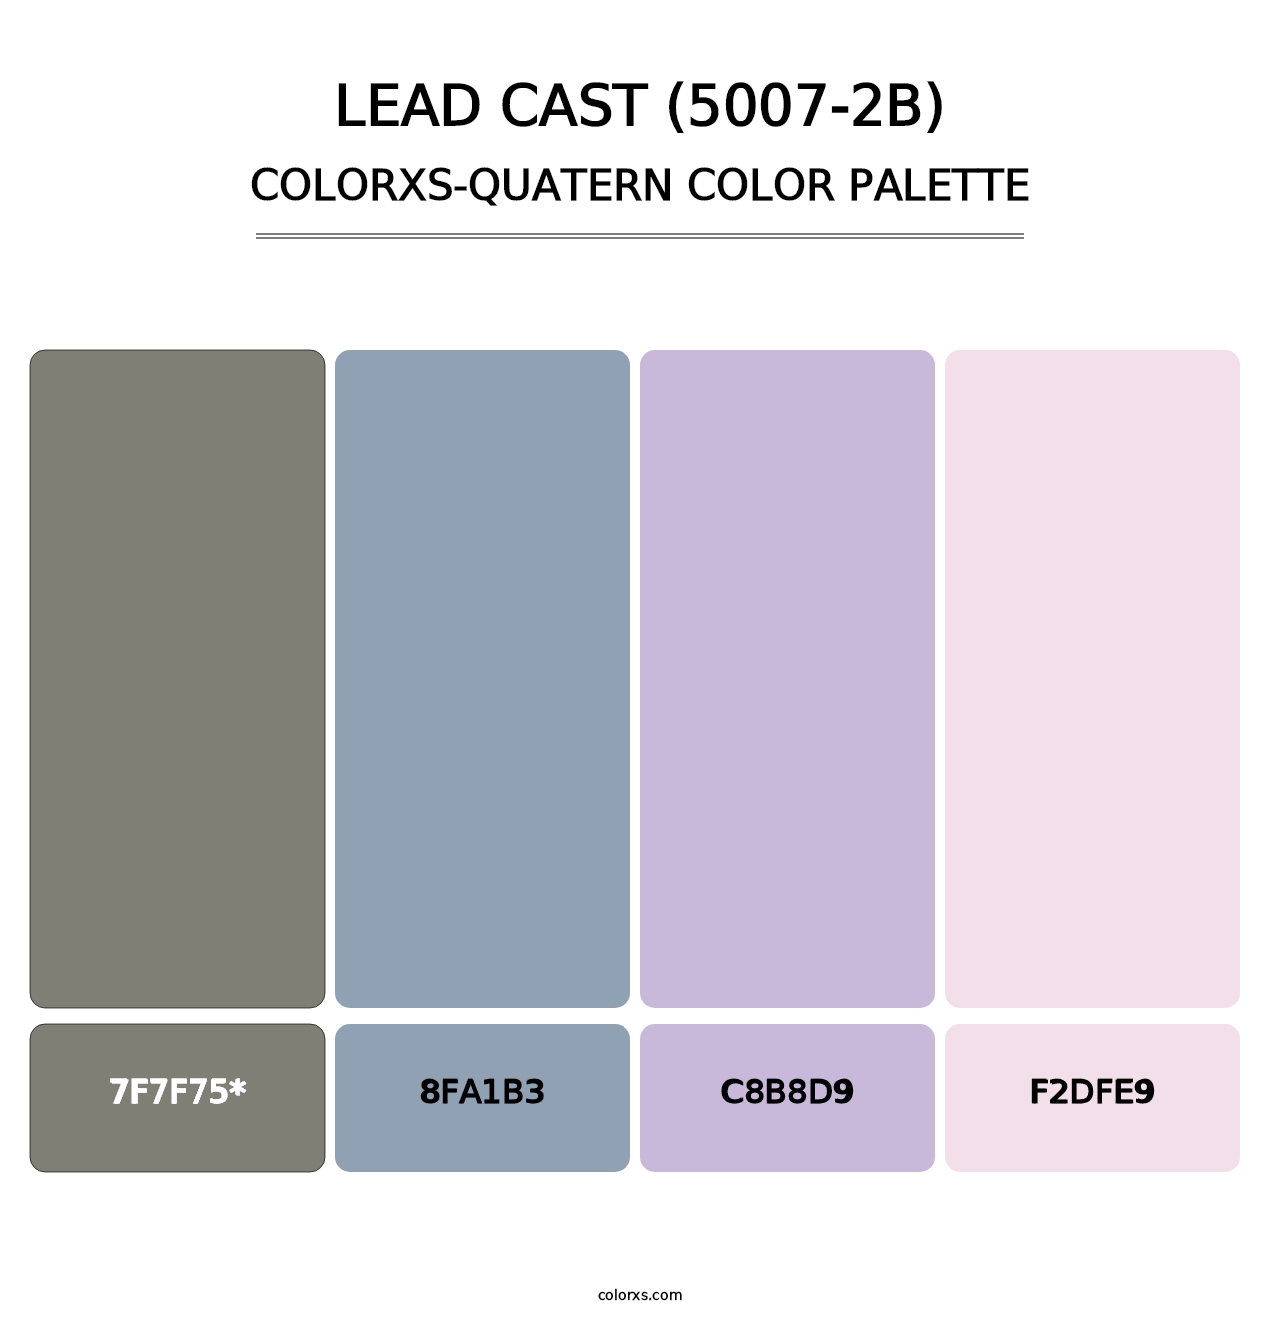 Lead Cast (5007-2B) - Colorxs Quatern Palette